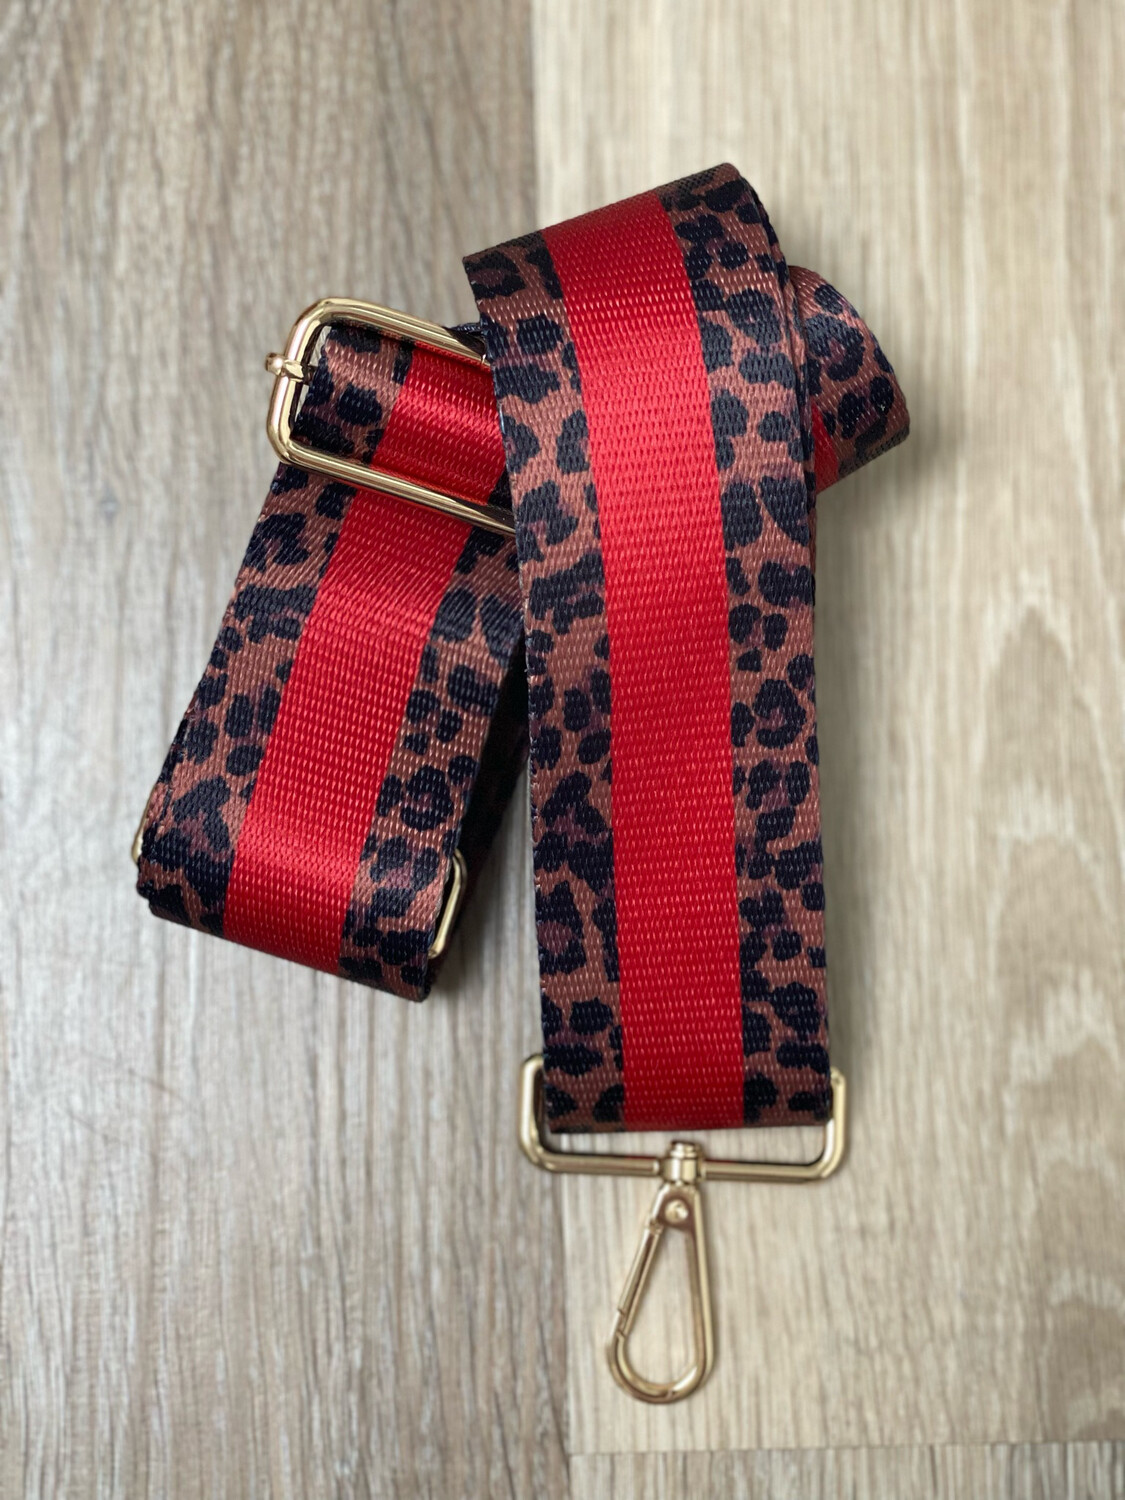 Bag Strap Leopard & Red